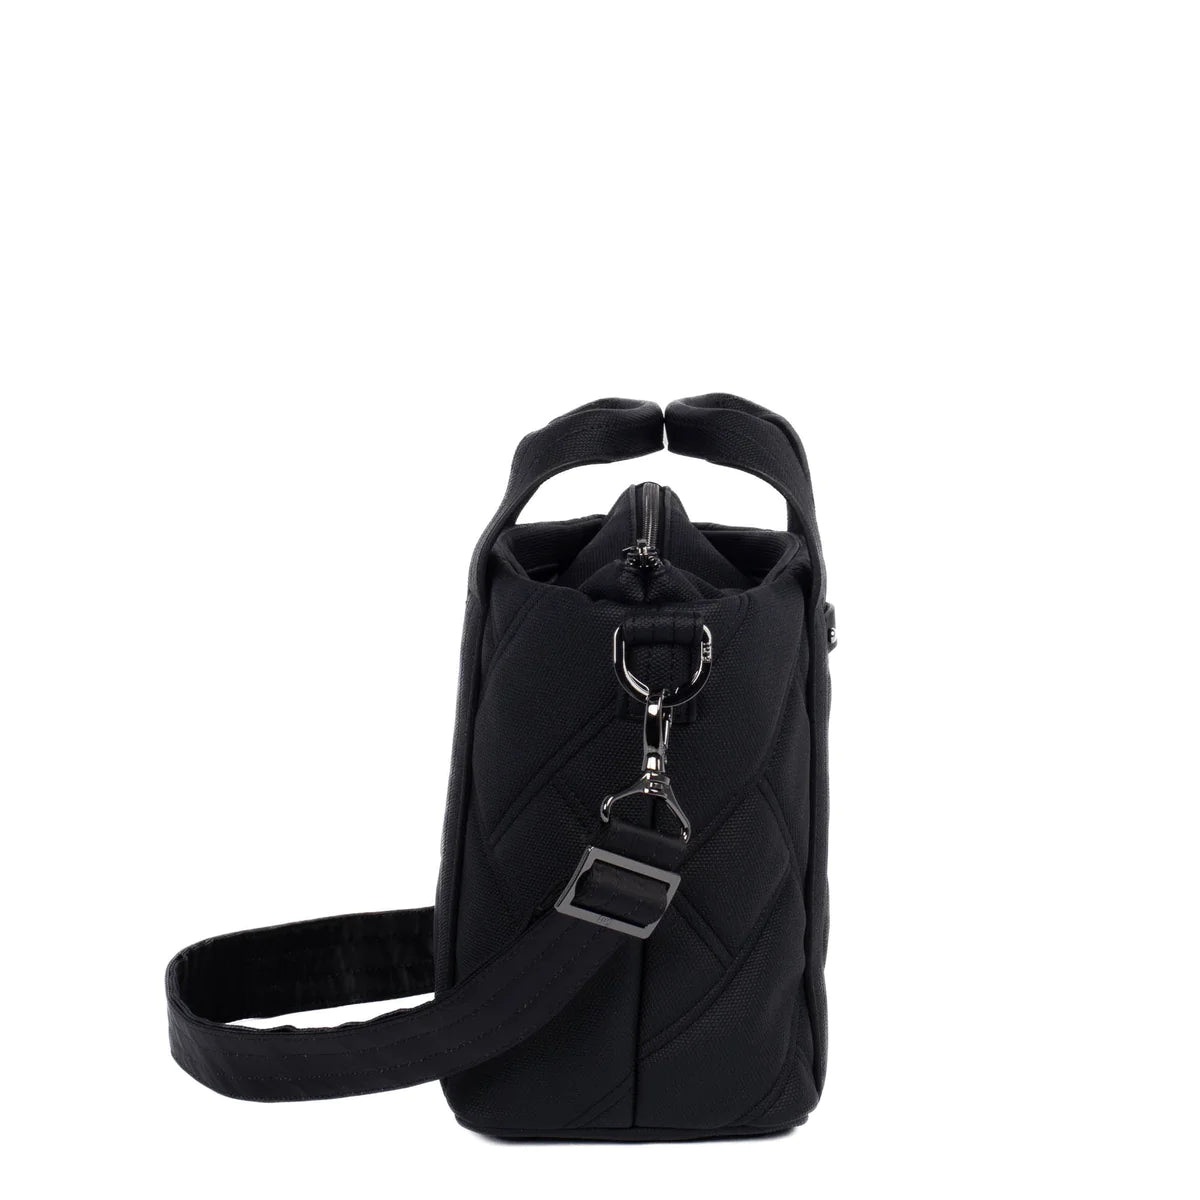 LUG Dory Matte Luxe VL Crossbody Bag in Black